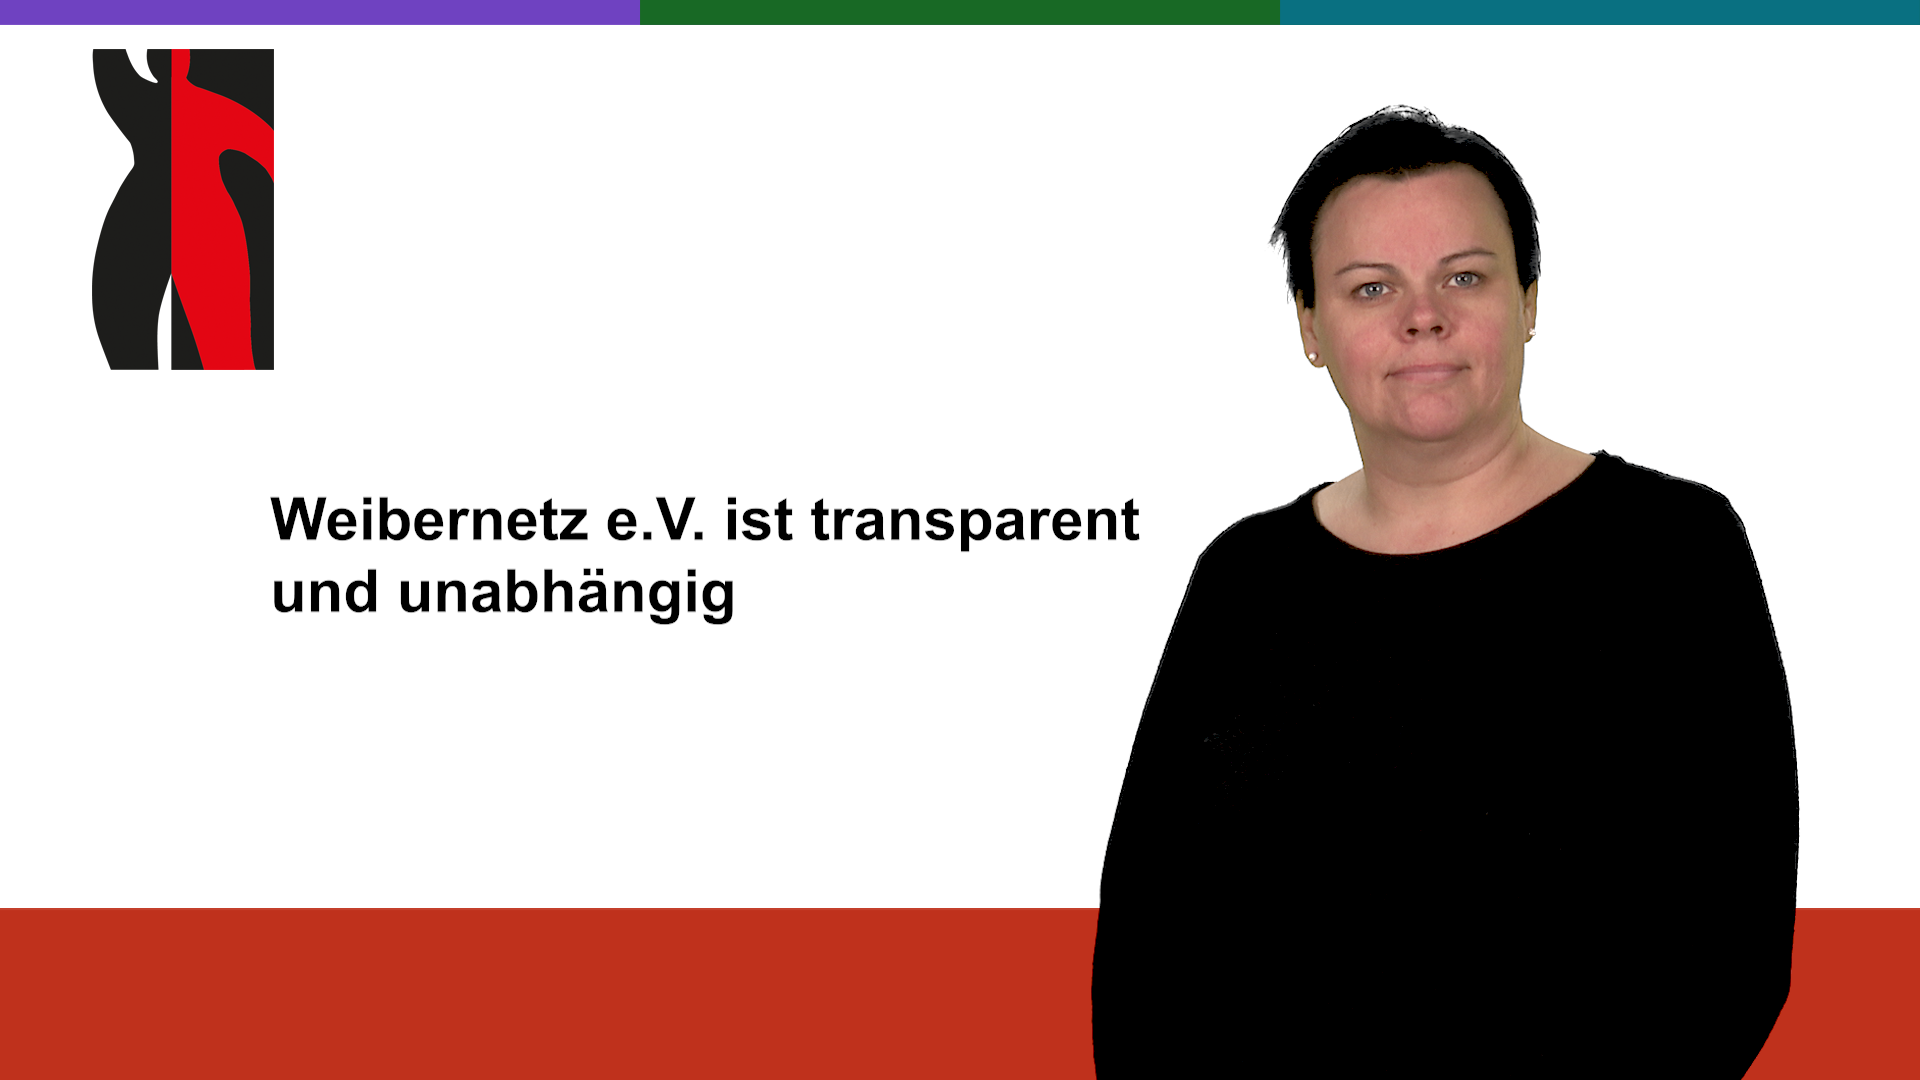 Startfoto zum Gebärdenvideo: Weibernetz e.V. ist transparent und unabhängig